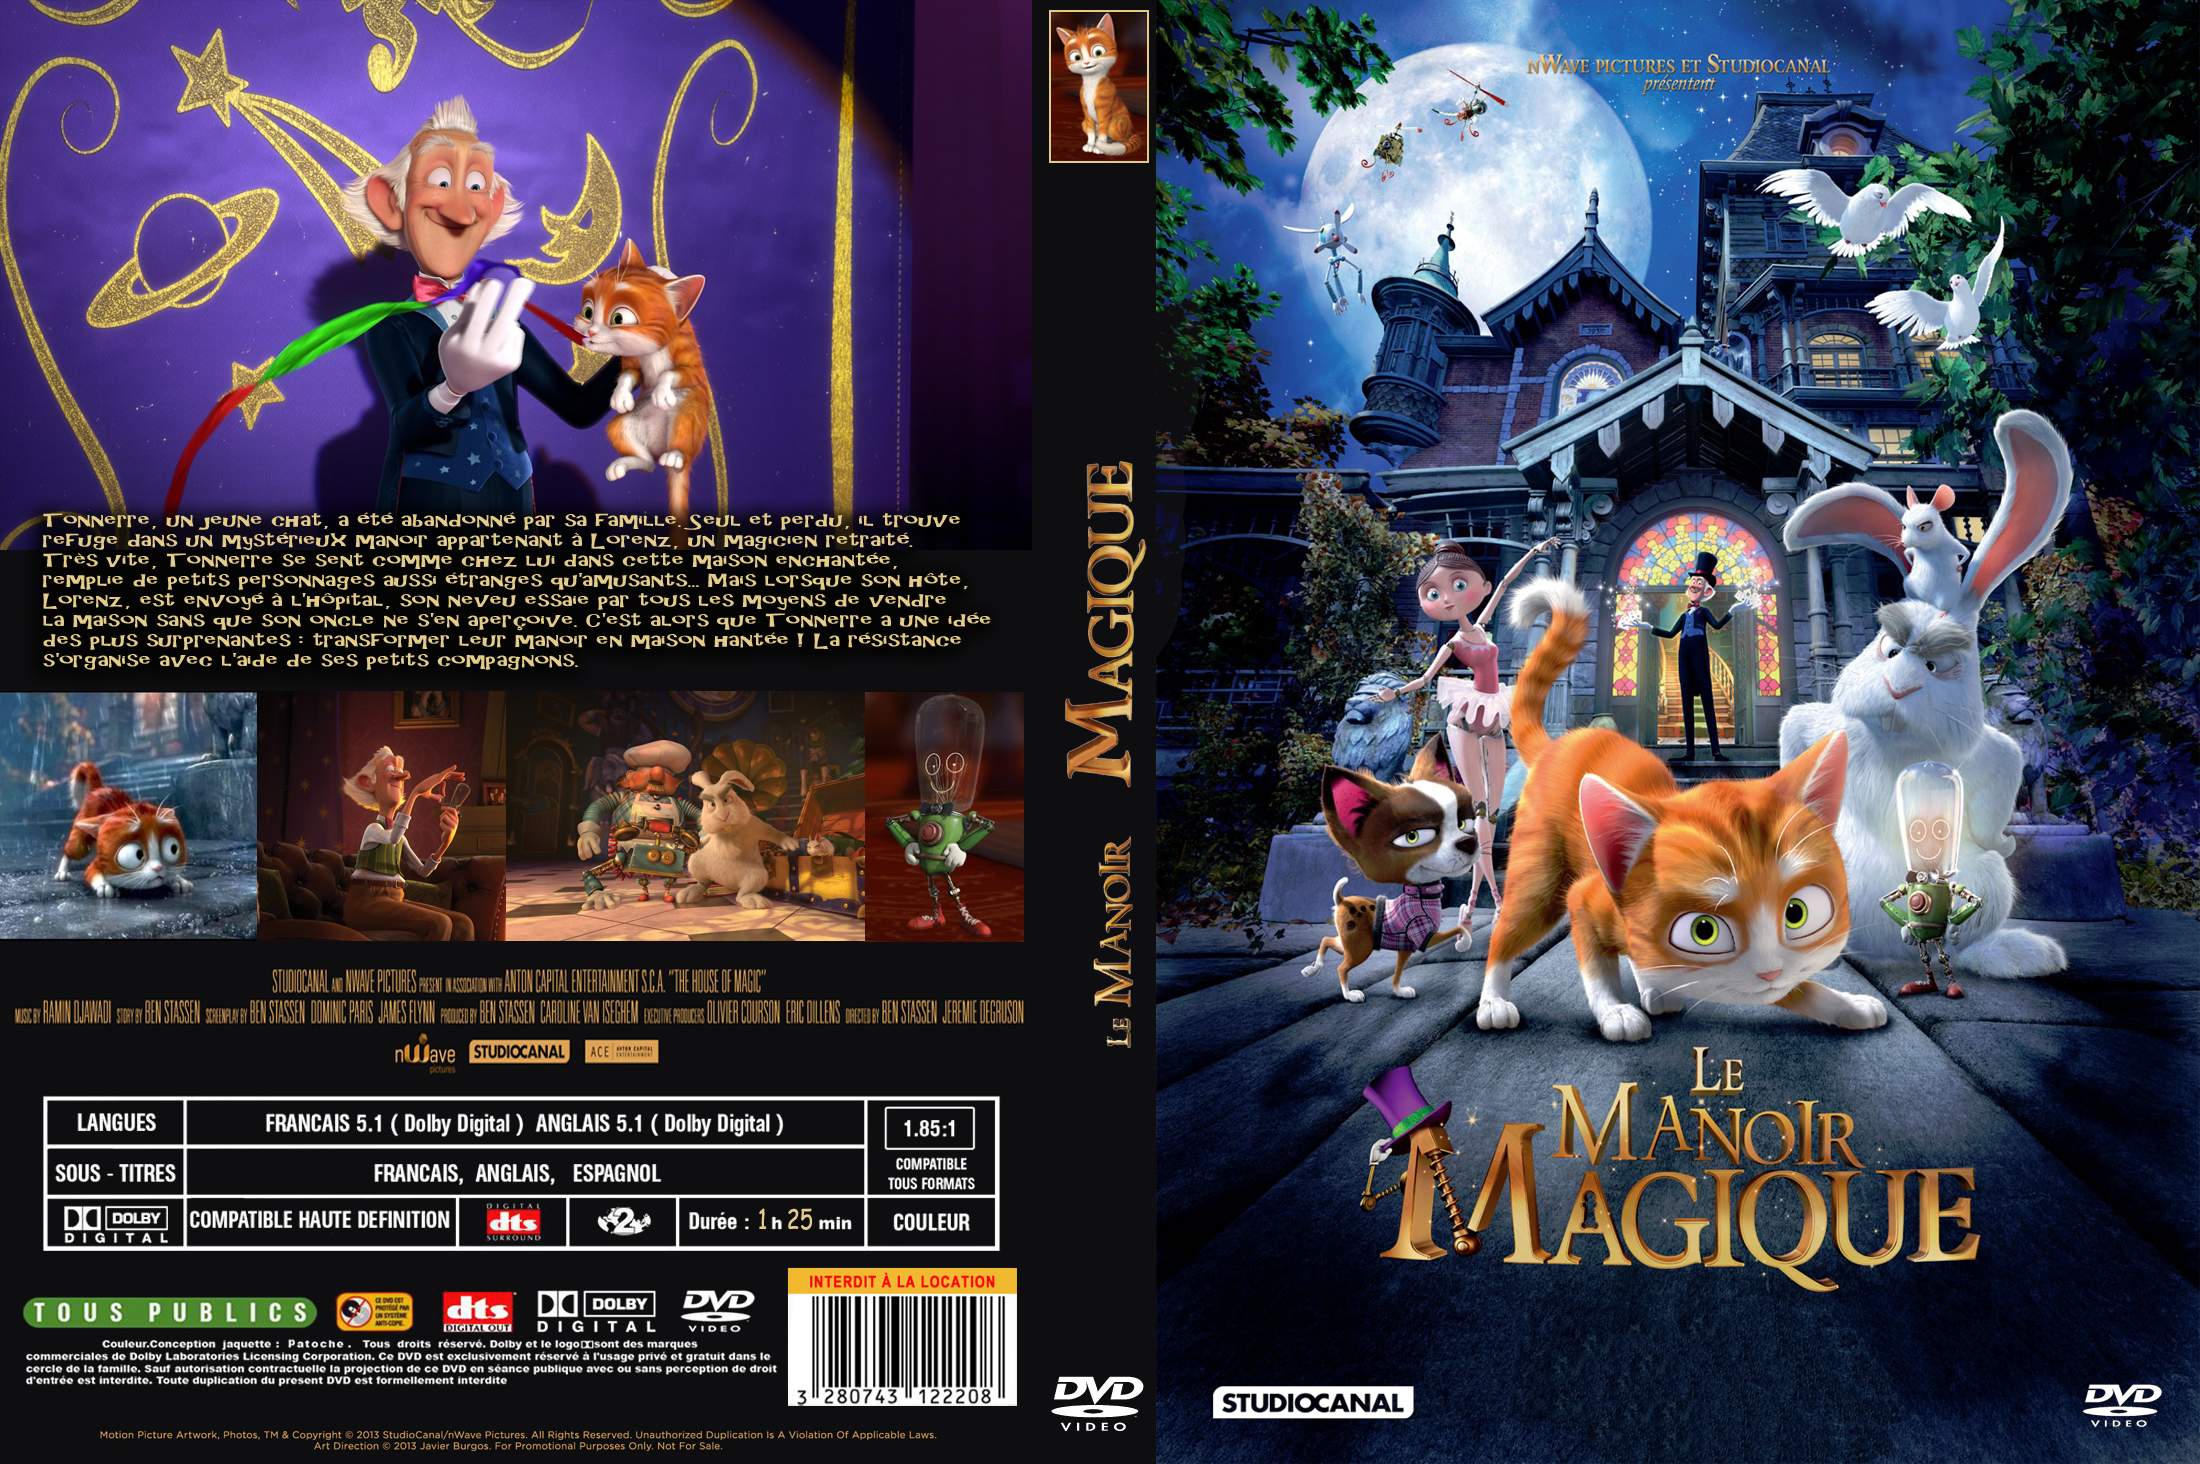 Jaquette DVD Le Manoir magique custom v2